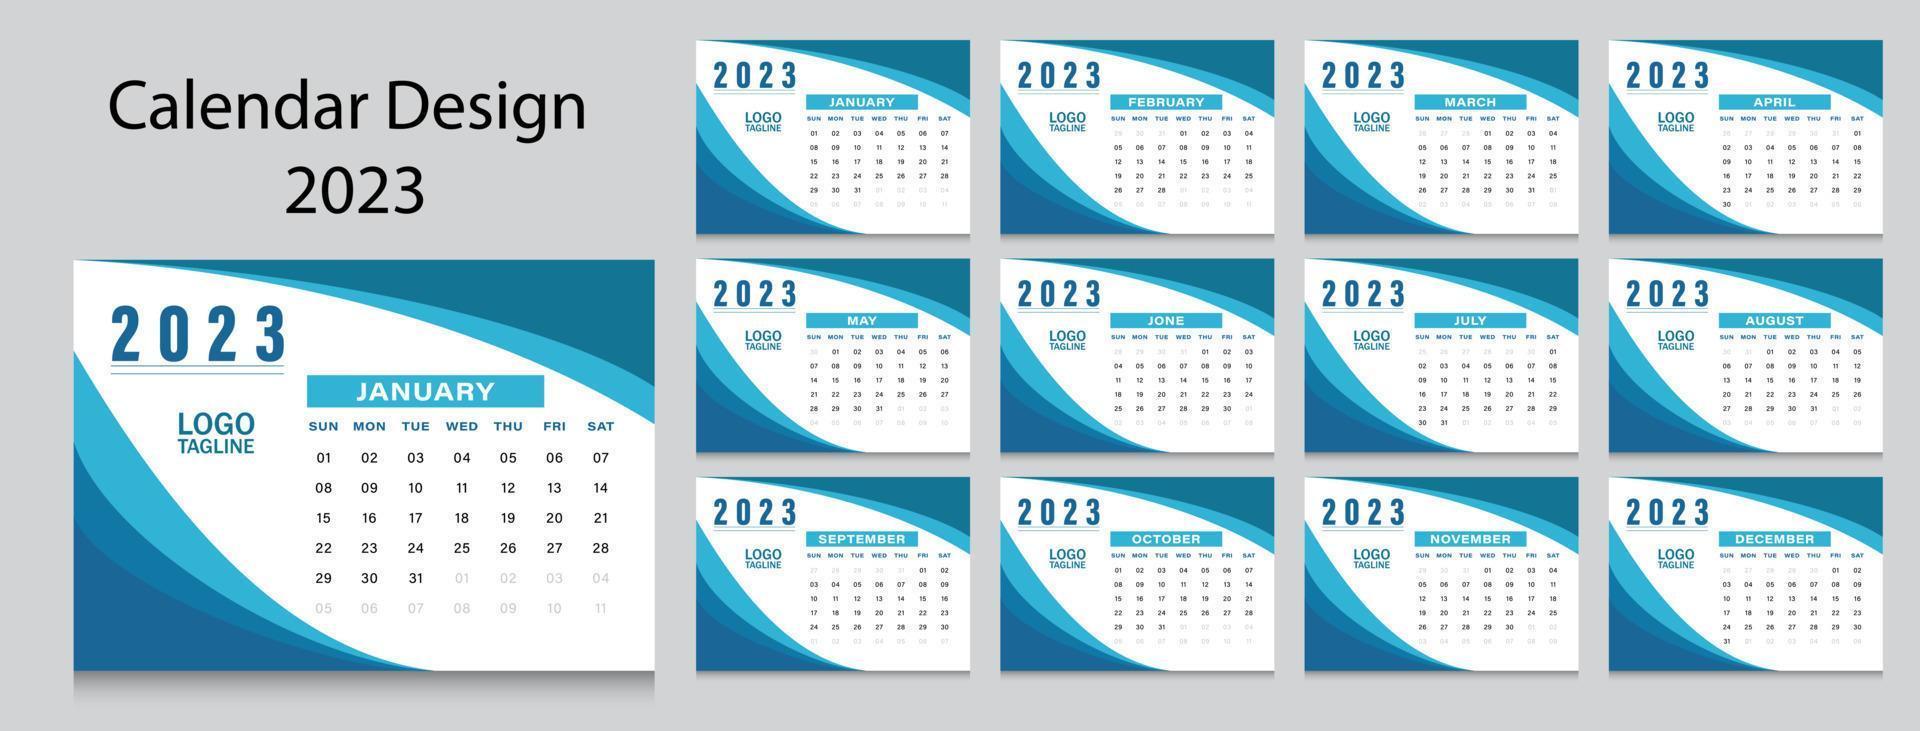 plantilla de calendario limpio de año nuevo 2023 vector